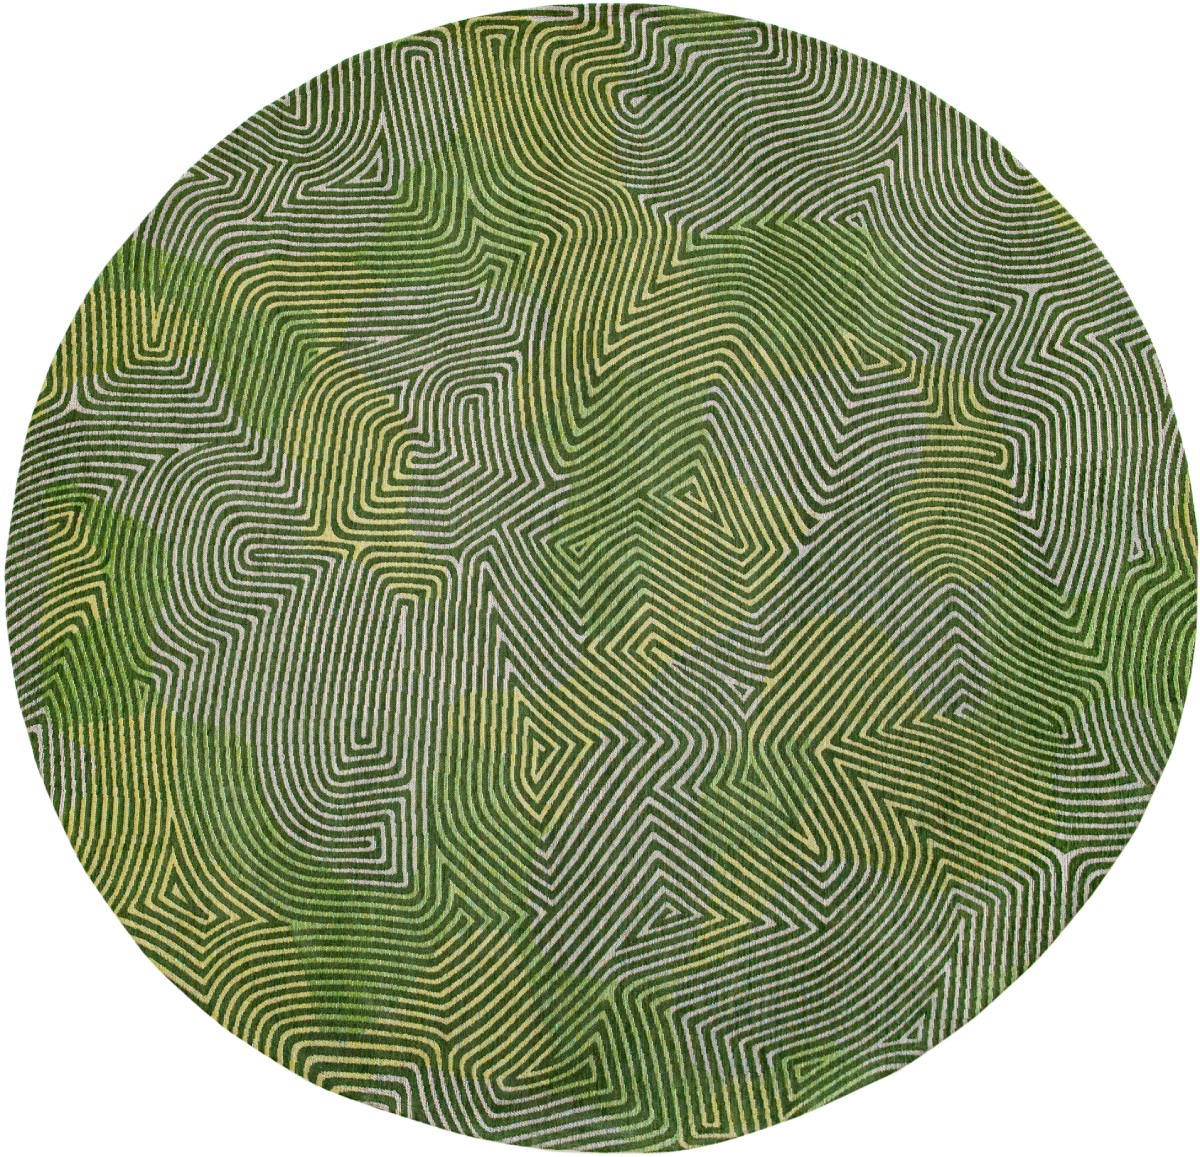 Tropical Green Round Rug ☞ Size: Round 8' (Ø 240 cm)